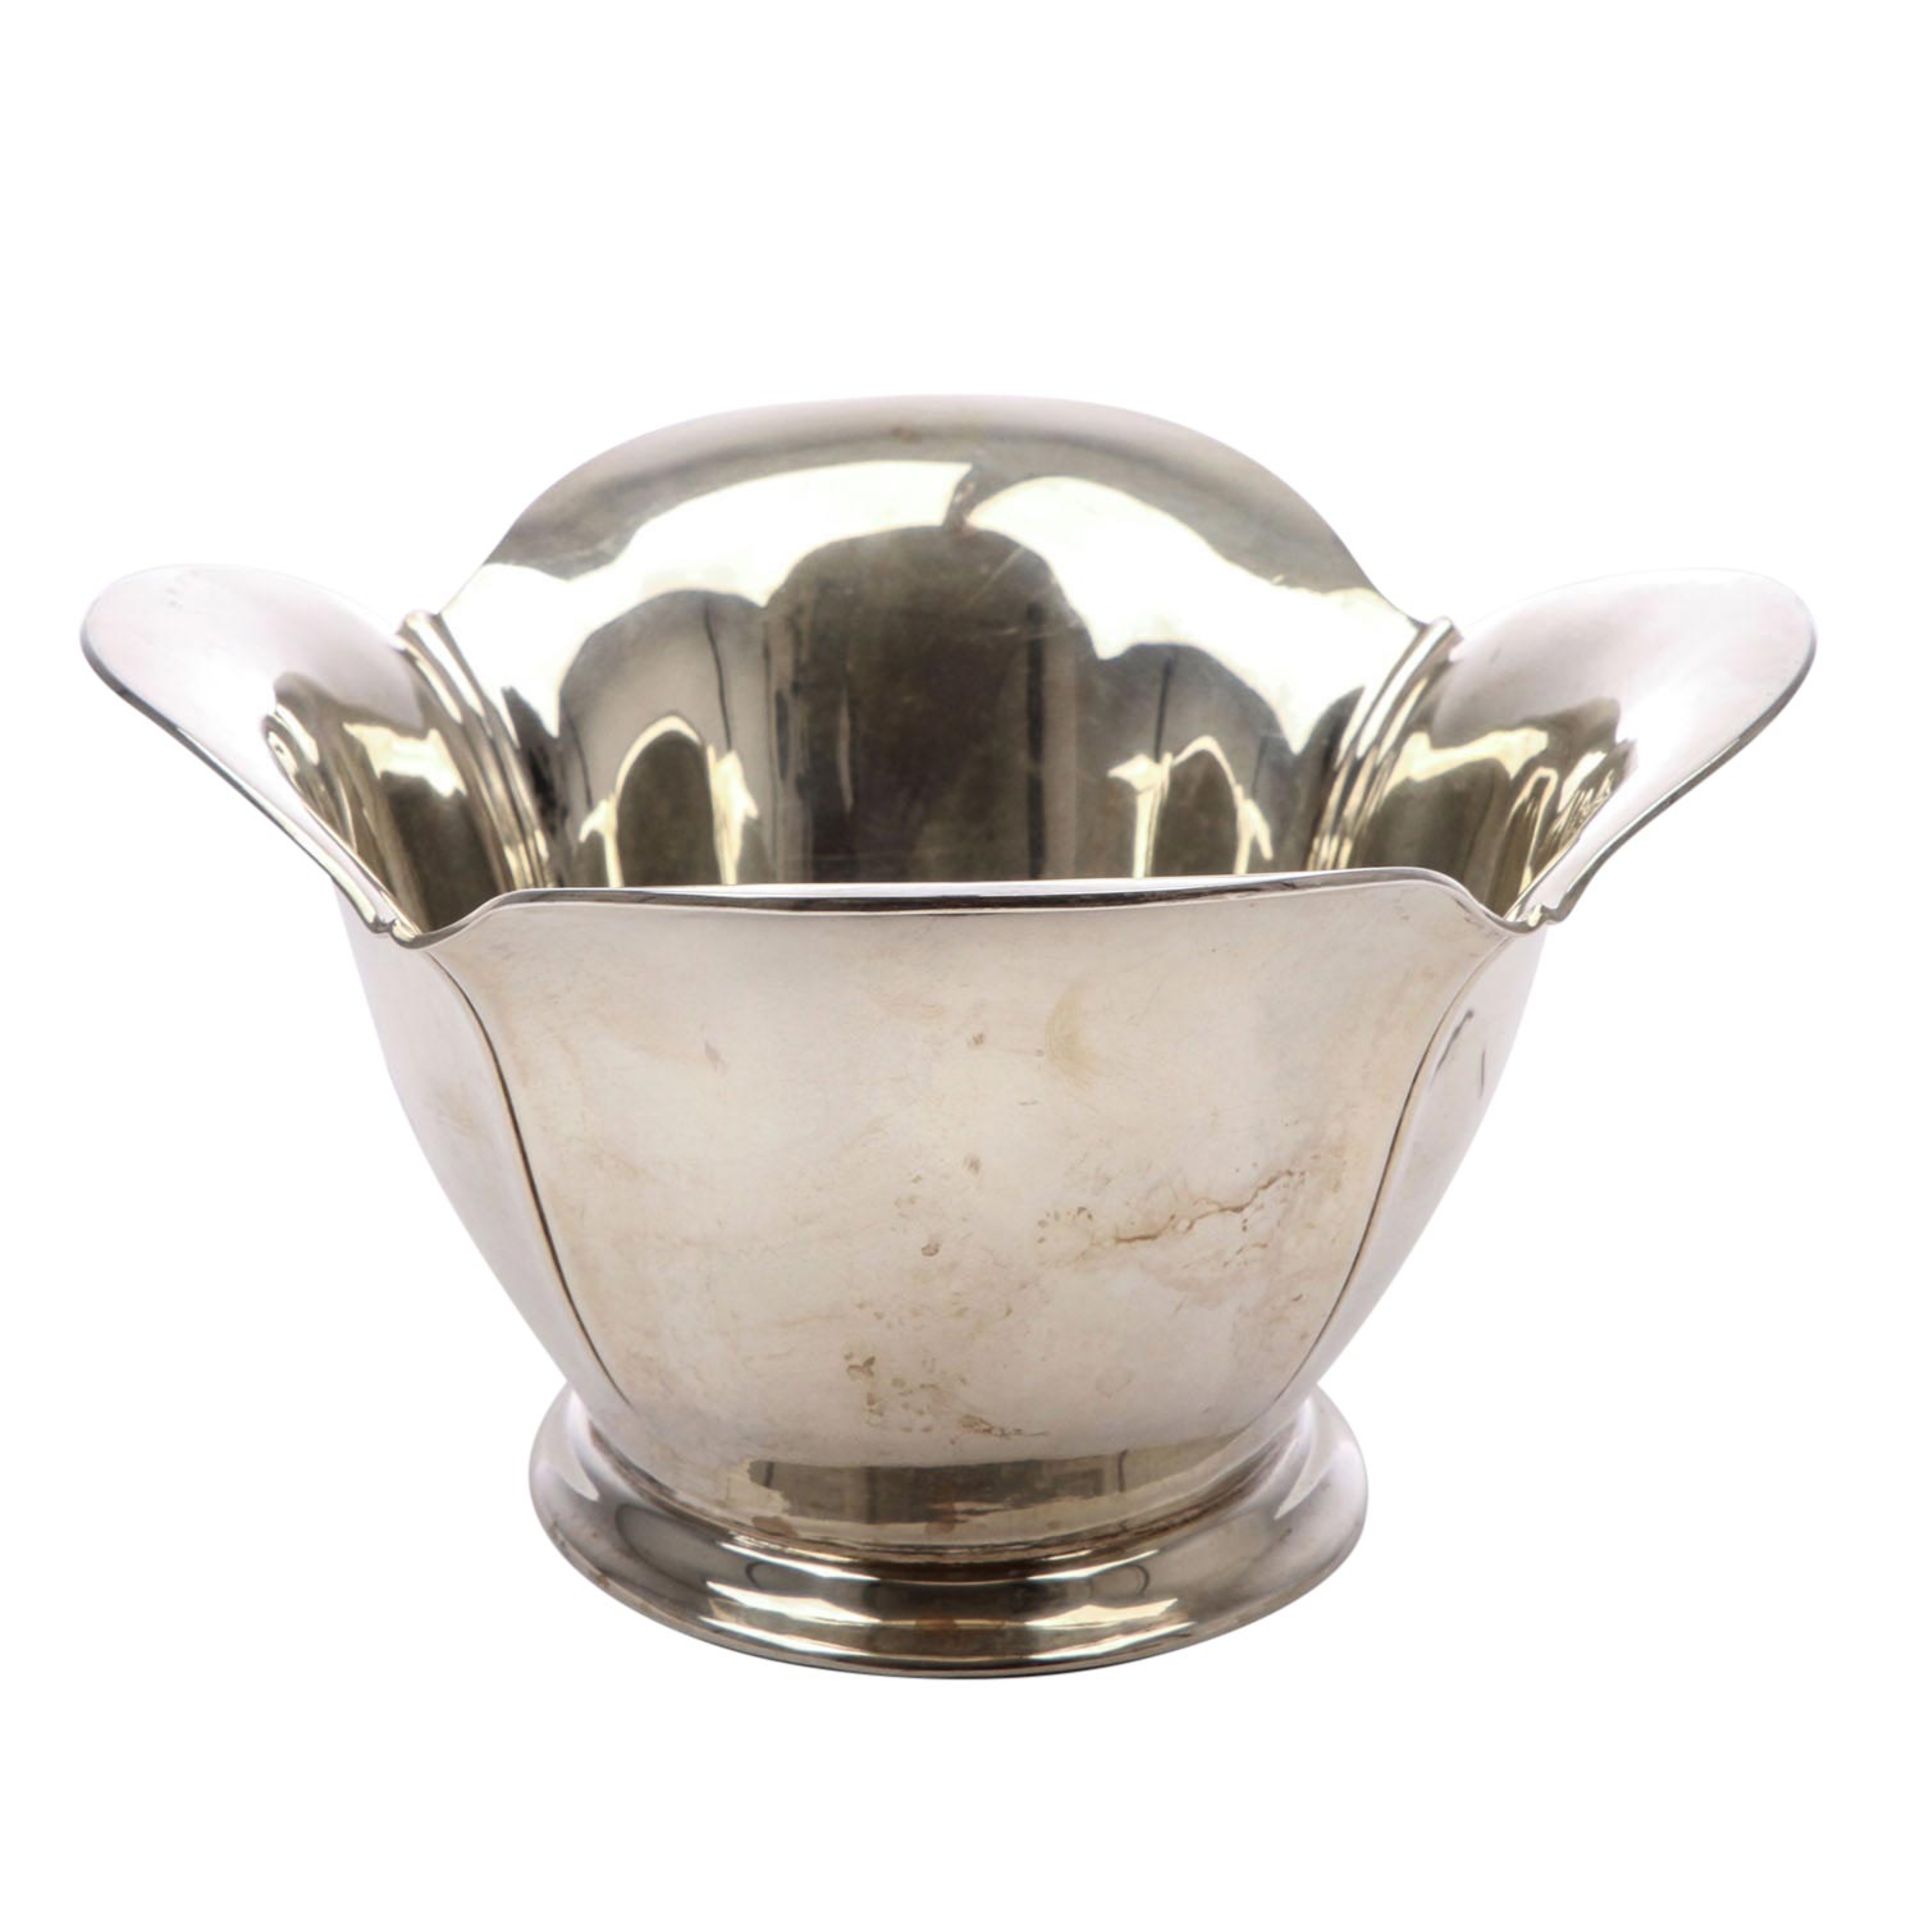 ERNST MENNER Schale, 925 Silber, 20. Jhd.Ovale Form mit hochgezogener, mehrpassiger Wandung, L. - Image 5 of 7